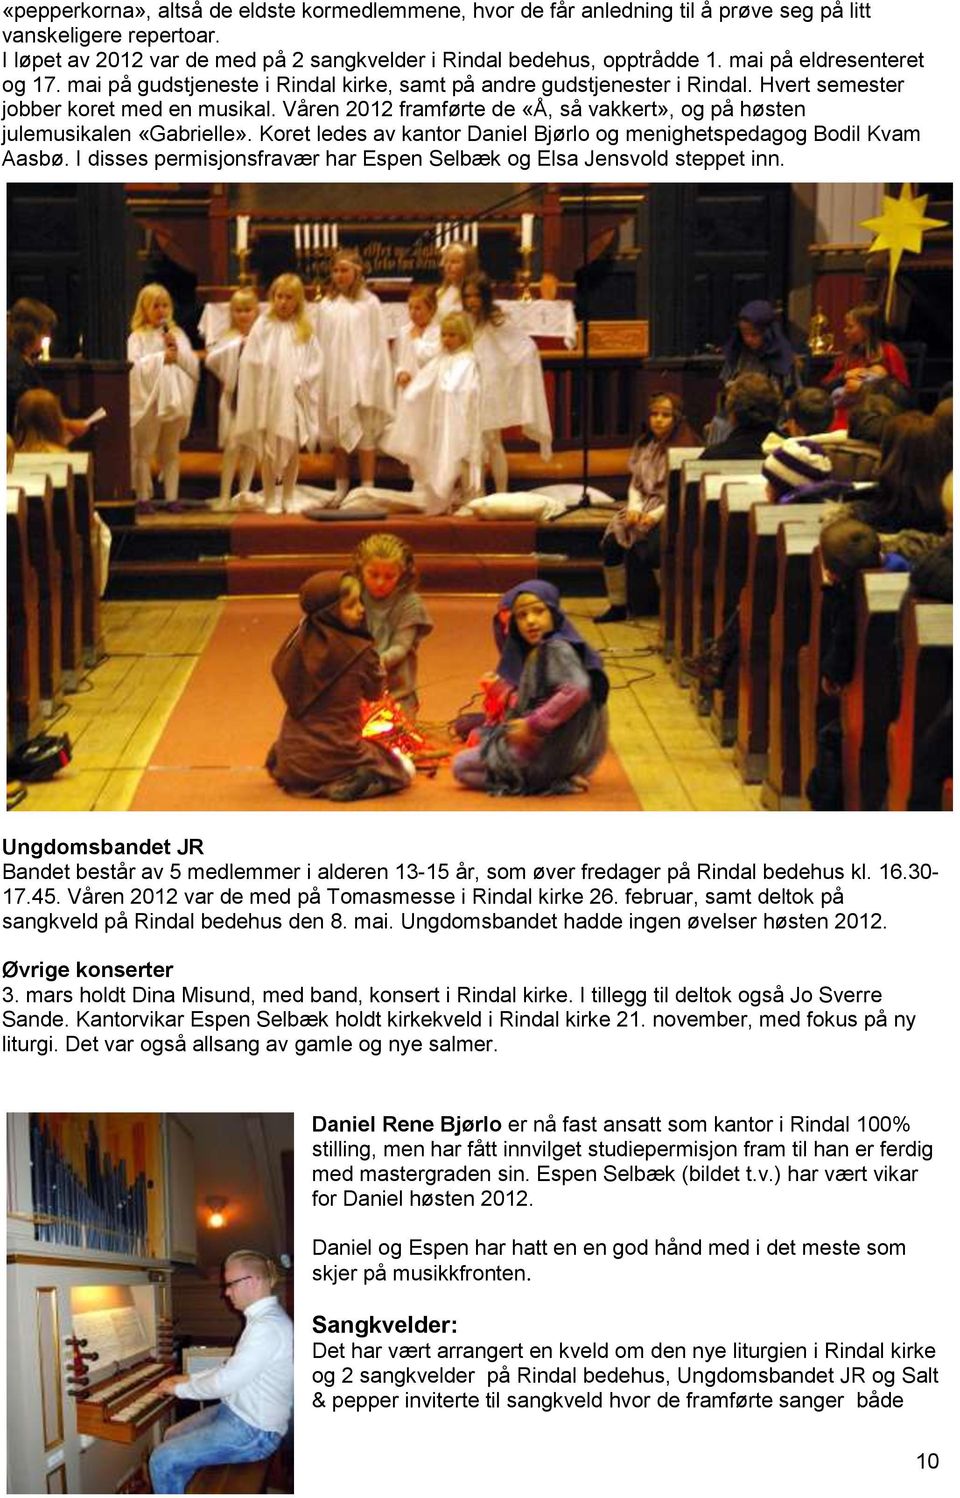 Våren 2012 framførte de «Å, så vakkert», og på høsten julemusikalen «Gabrielle». Koret ledes av kantor Daniel Bjørlo og menighetspedagog Bodil Kvam Aasbø.